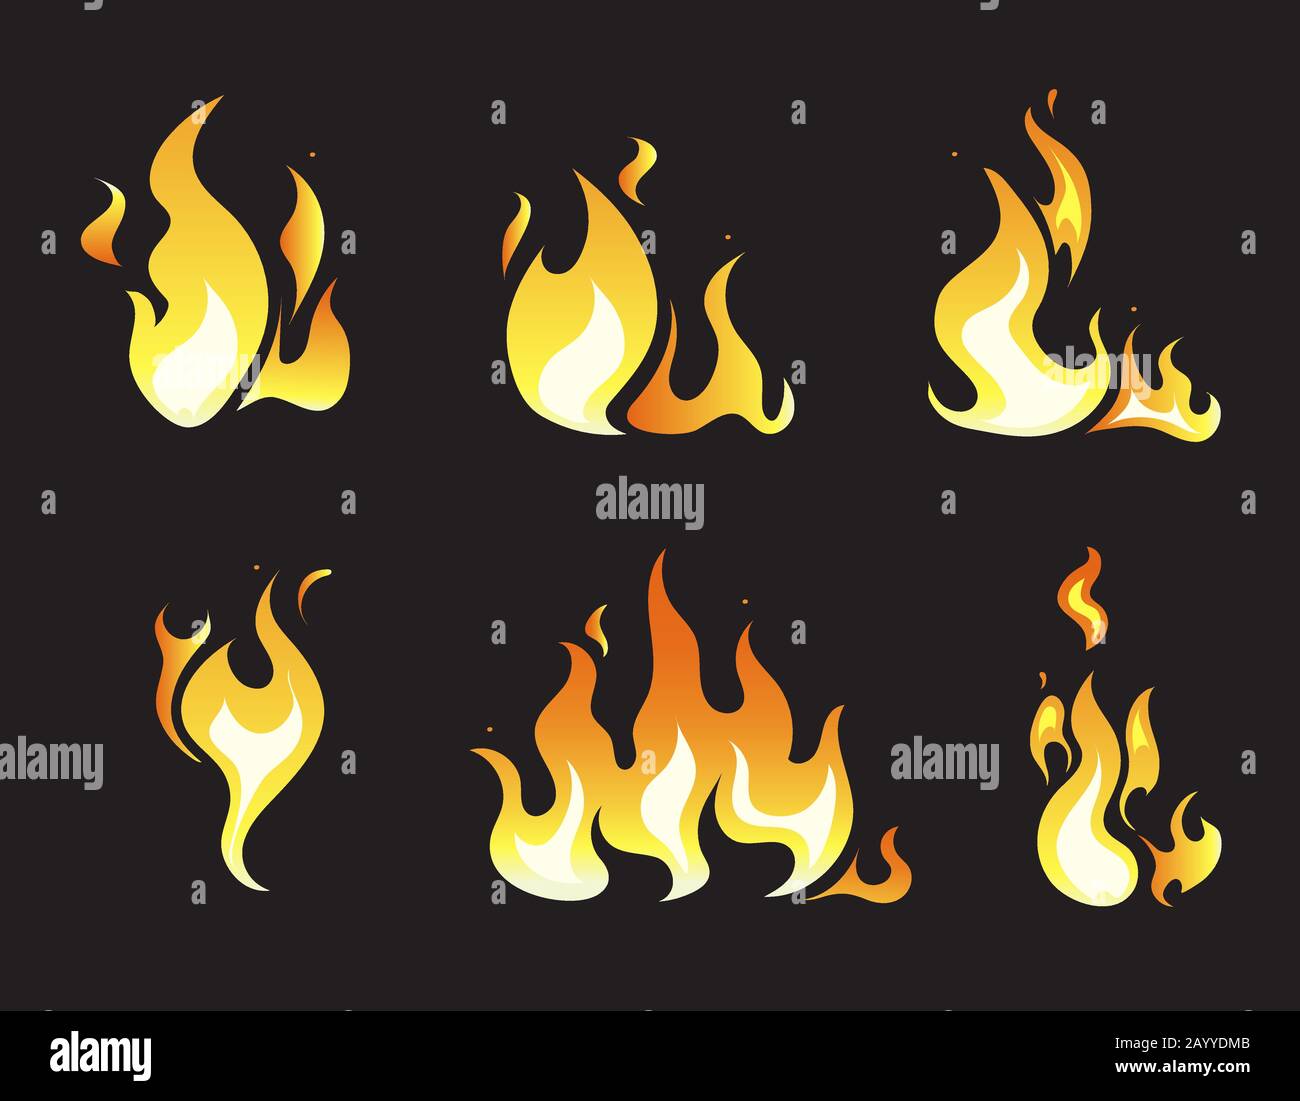 Fotogrammi vettoriali per animazioni di esplosione. Insieme di fuoco di animazione e illustrazione di fuoco vario Illustrazione Vettoriale